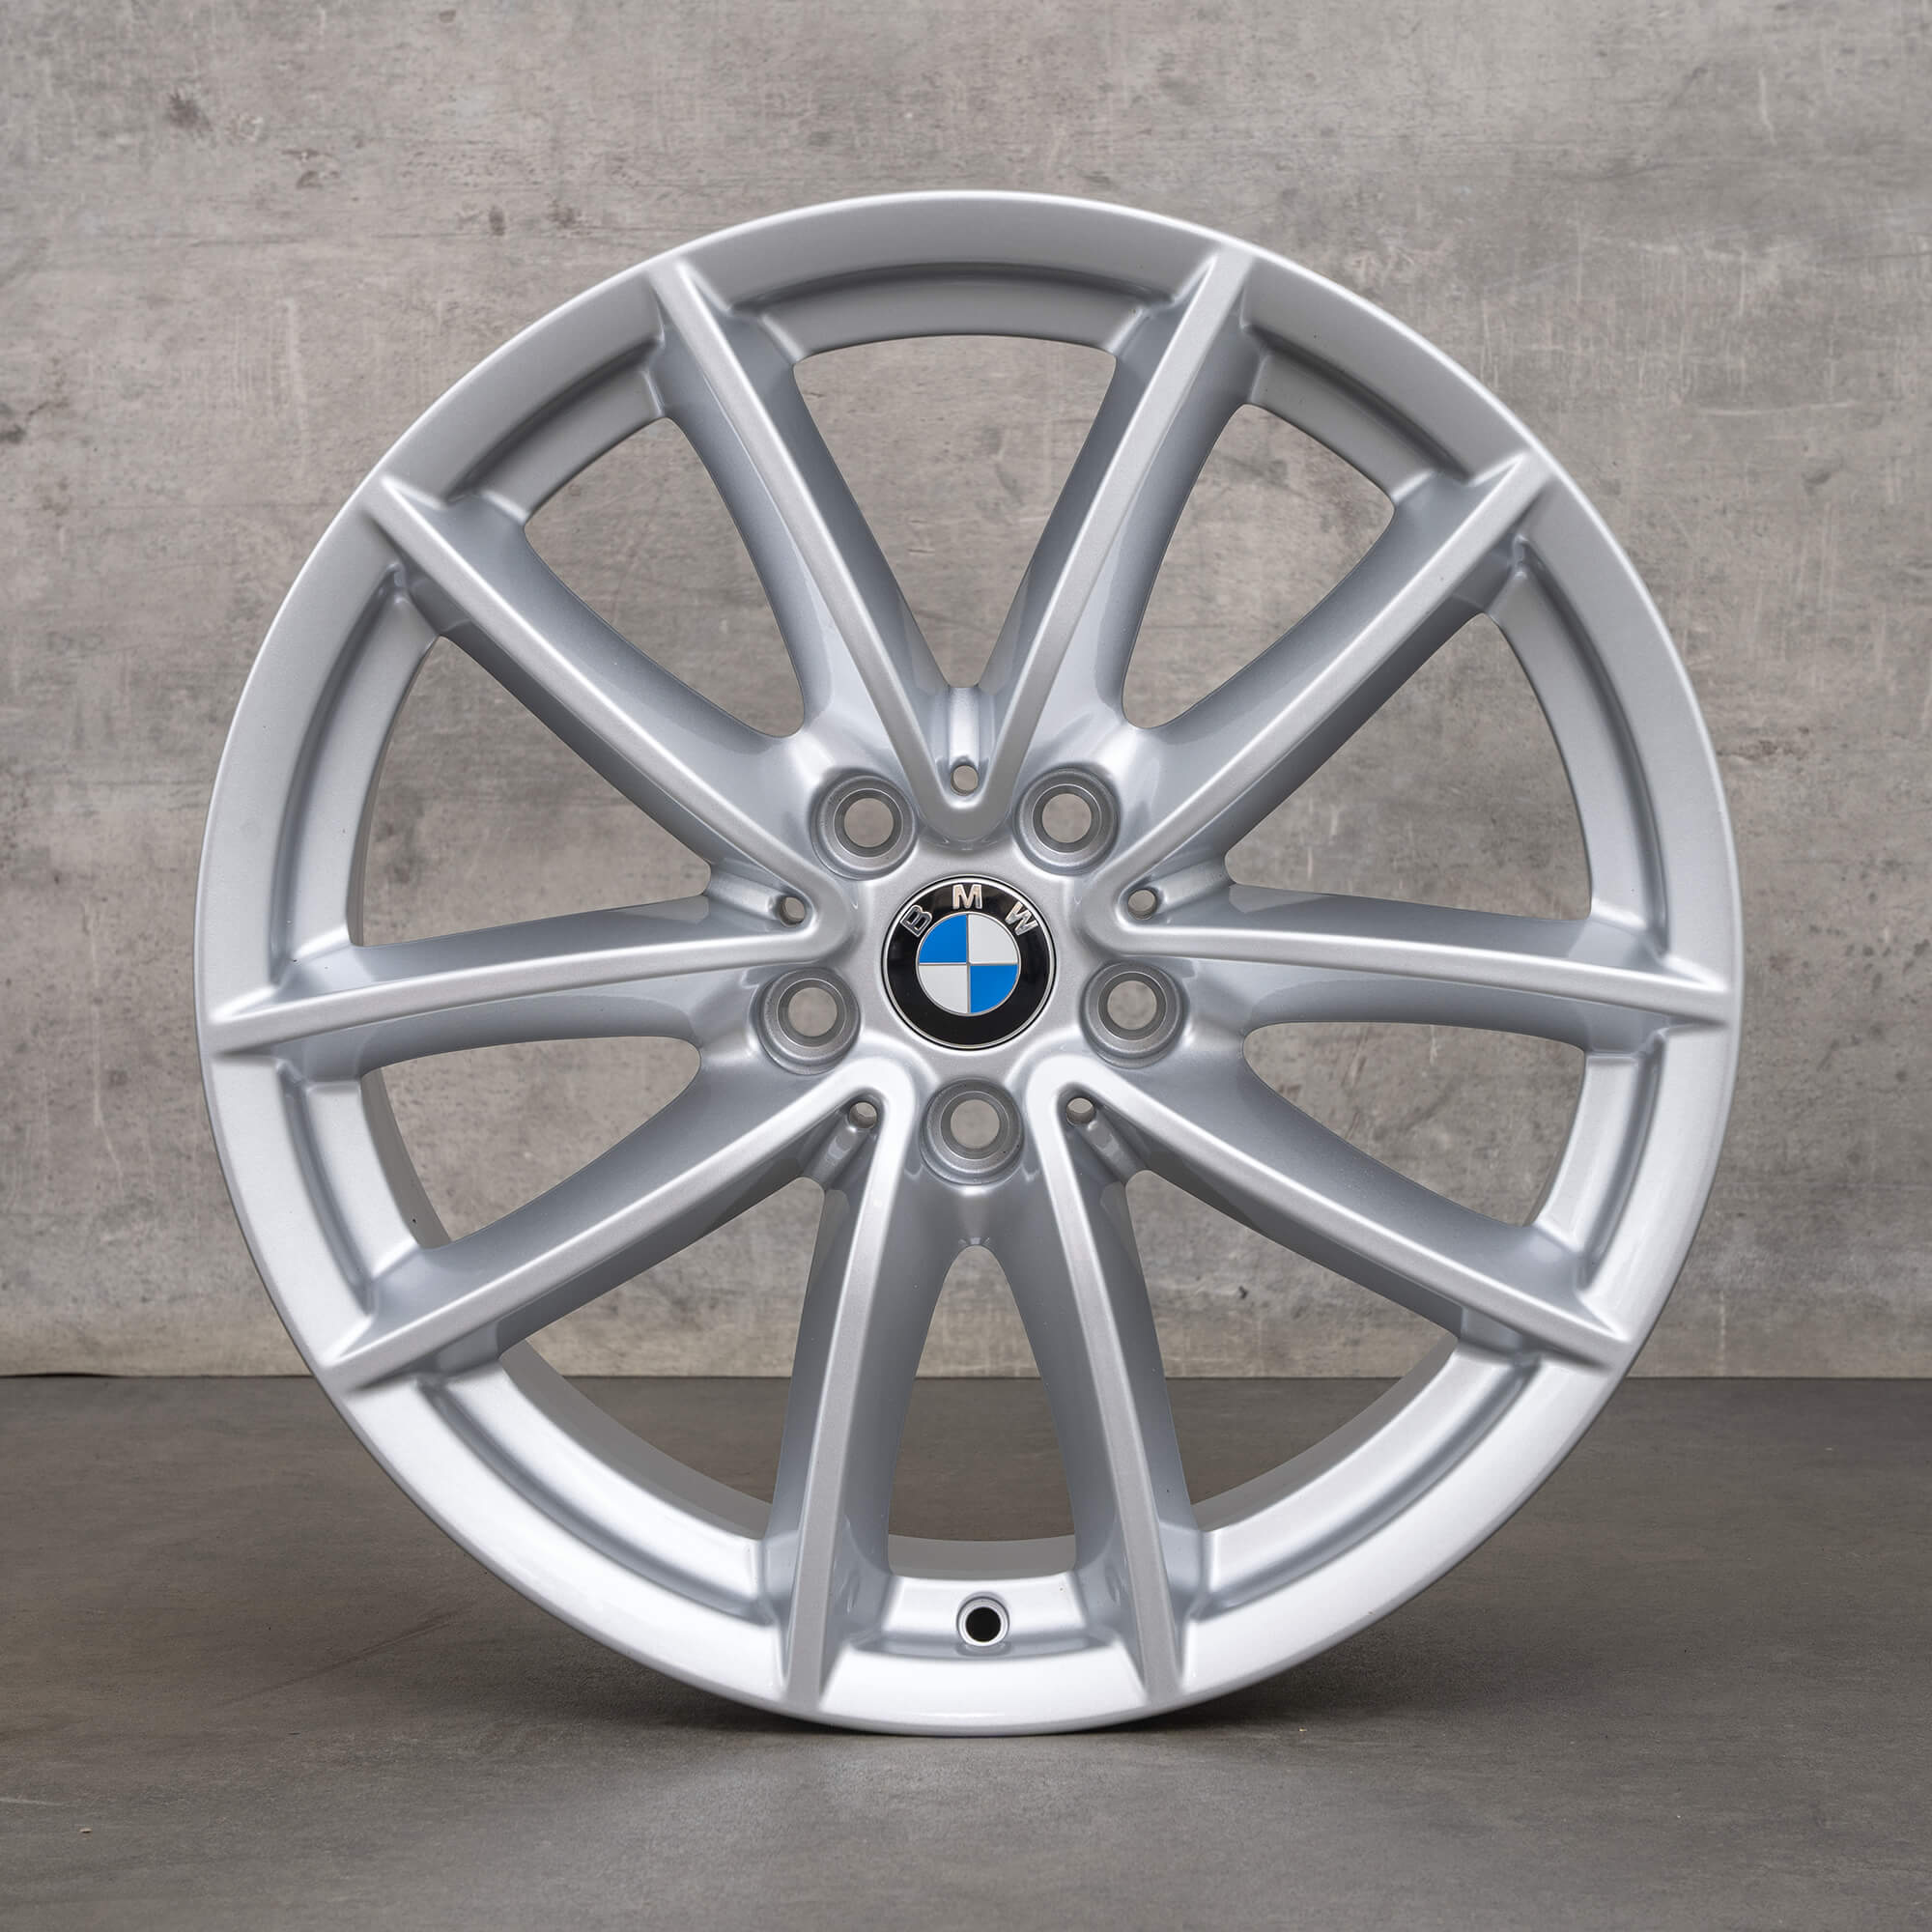 BMW 18 inch rims X5 G05 Styling 618 V-spoke 6880684 alloy rims NEW